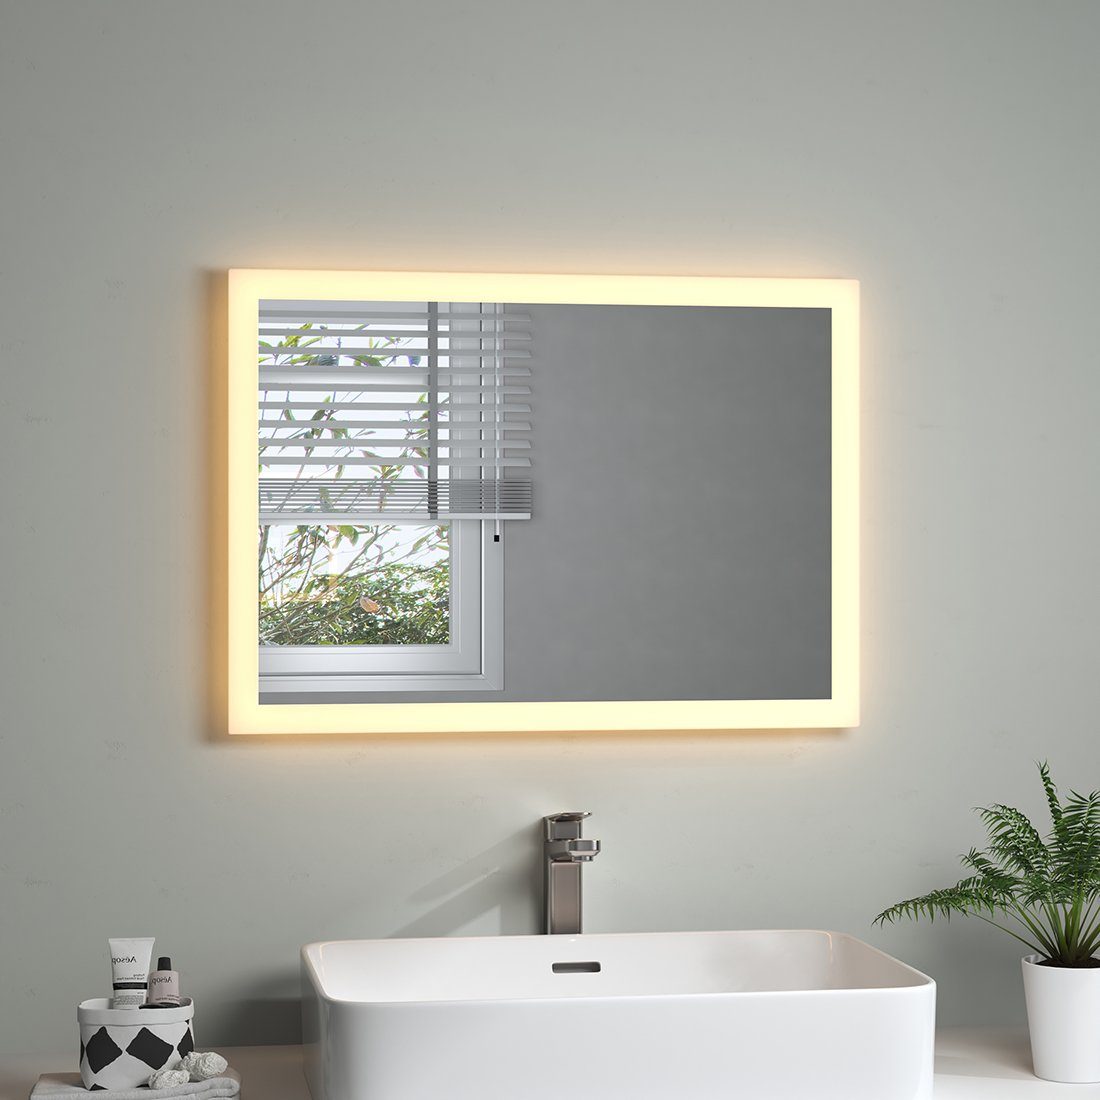 S'AFIELINA Badspiegel Badspiegel mit Beleuchtung LED Lichtspiegel Wandspiegel Energiesparend, Wandschalter,Warmweiß 3000K,Energiesparend, Wandmontage | Badspiegel